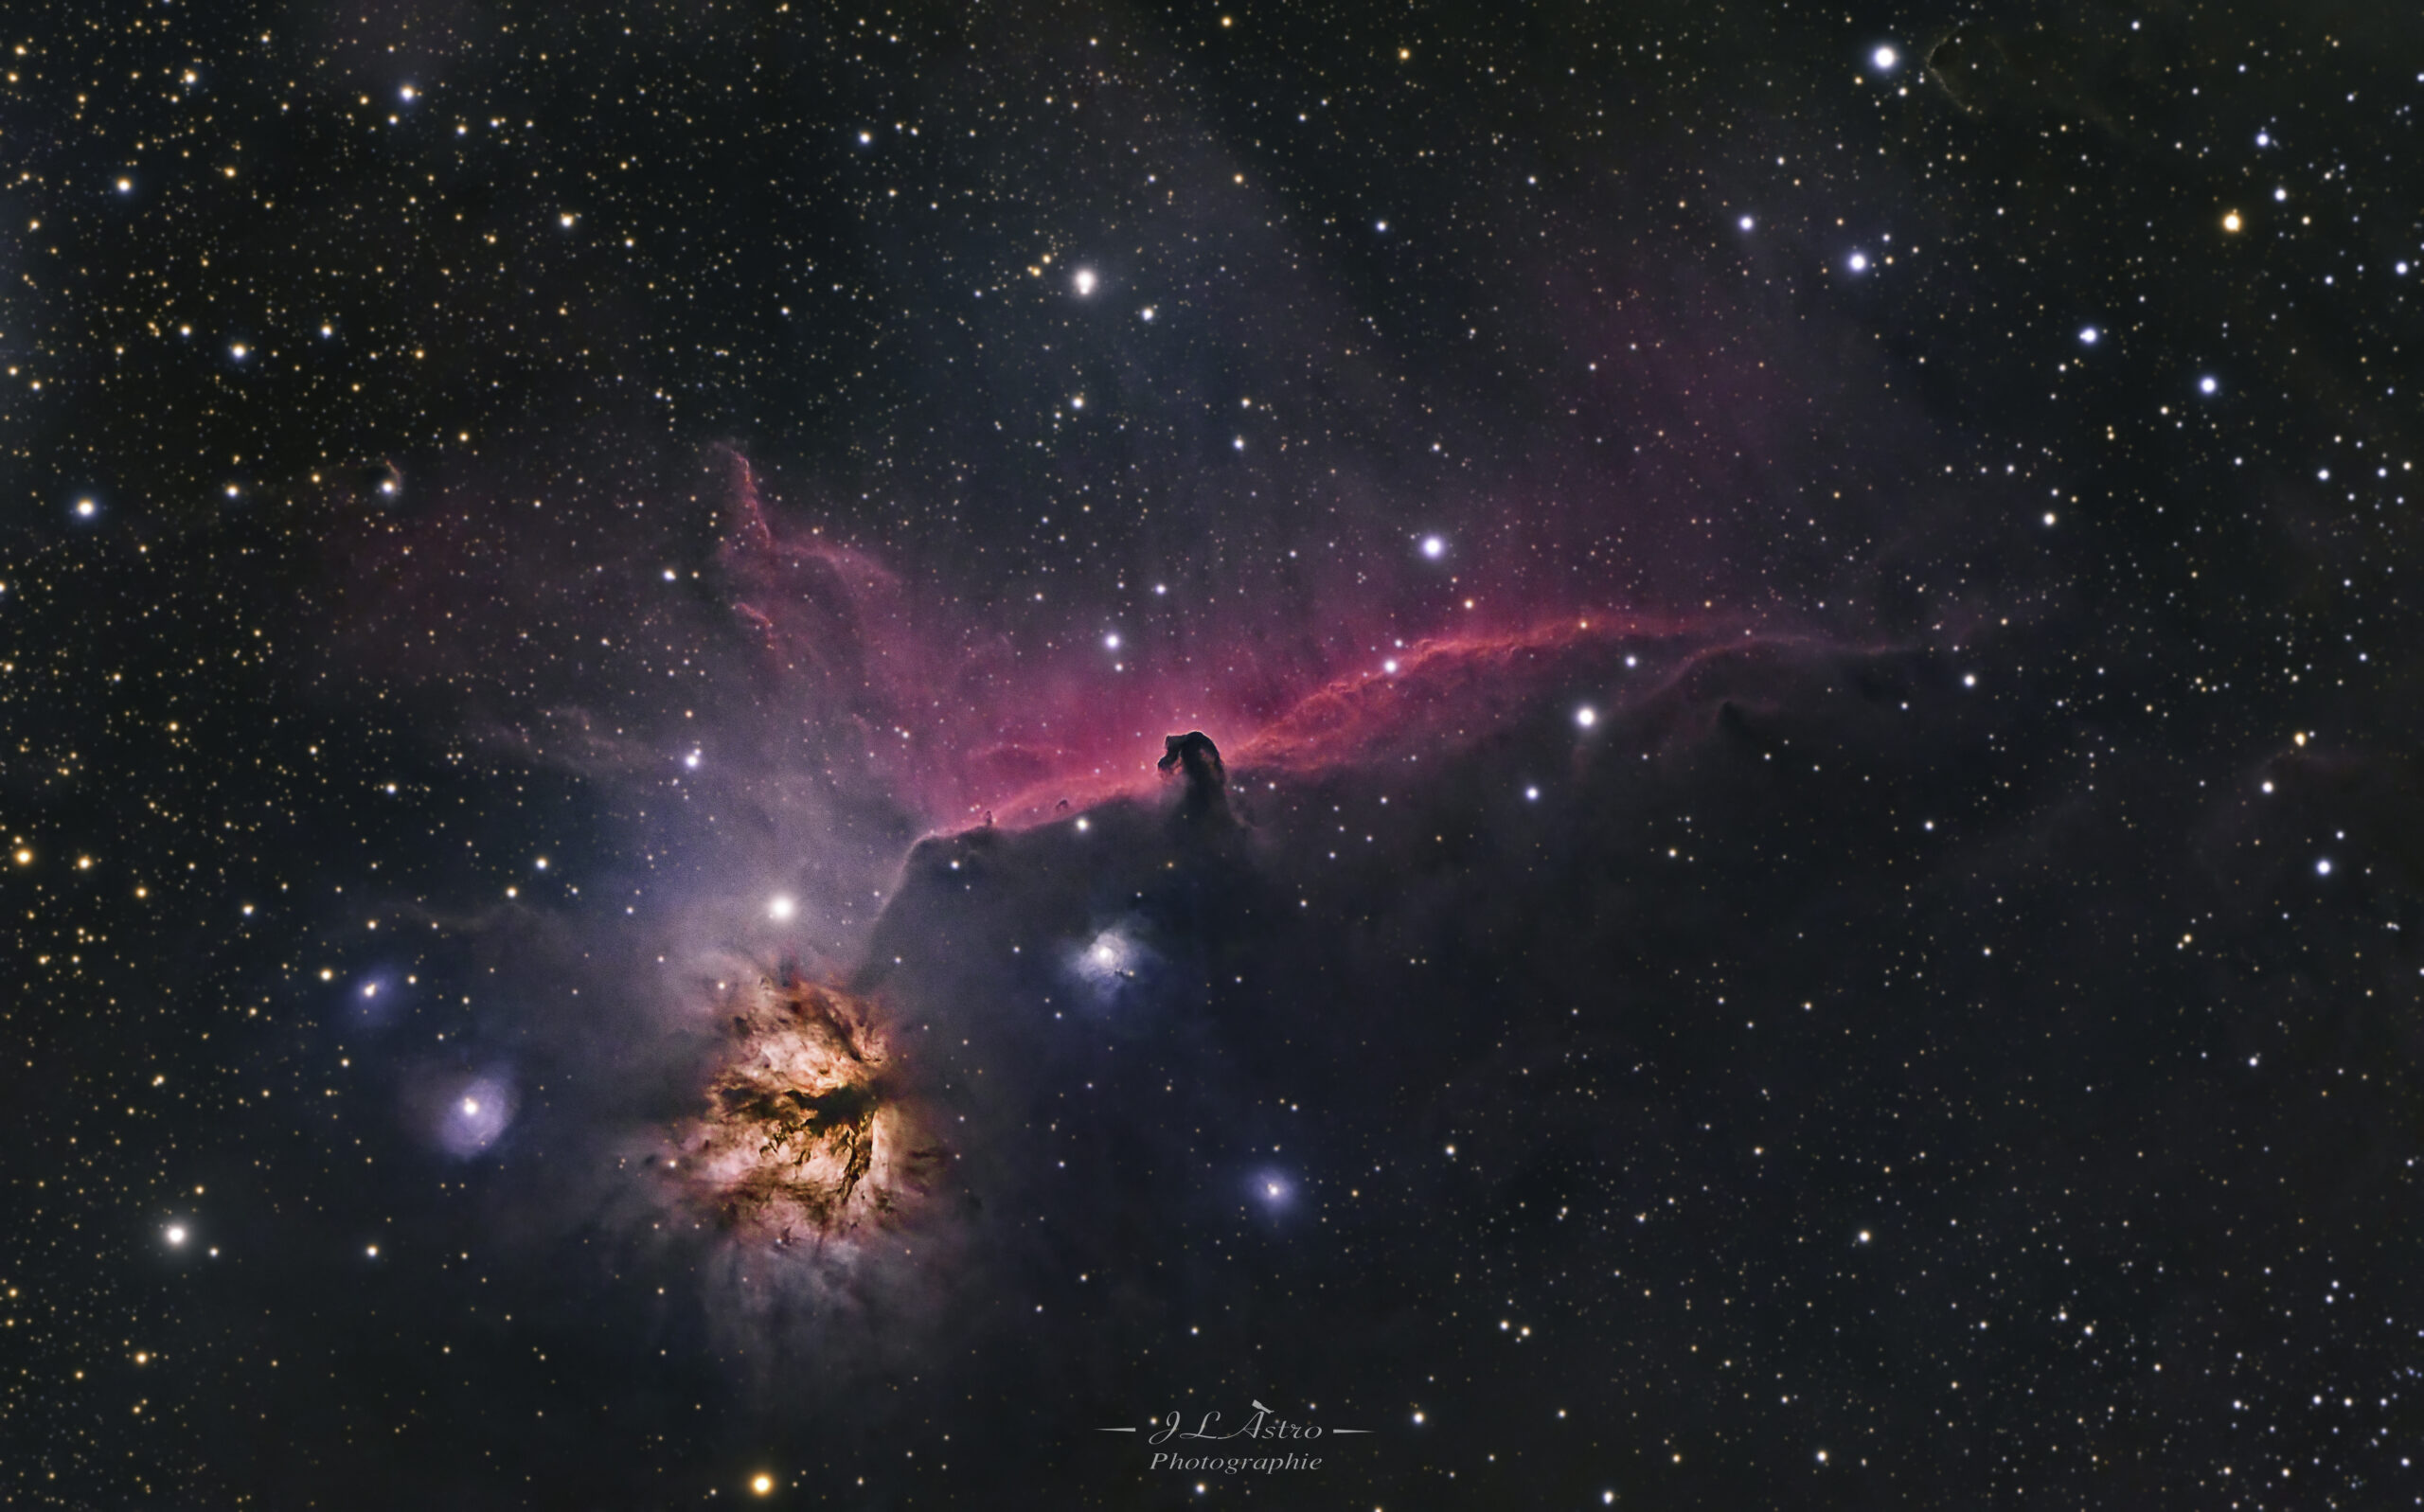 La nébuleuse de la Tête de Cheval, officiellement connue sous le nom de Barnard 33 (IC 434 désigne la nébuleuse émissive à l'arrière-plan), est une nébuleuse obscure dans la constellation d'Orion. La nébuleuse est située juste en dessous d'Alnitak , l'étoile la plus à l'est de la ceinture d'Orion. Elle est facilement reconnaissable par la forme en tête de cheval qui lui a donné son nom et qui se découpe dans la nébuleuse6. En effet, derrière la nébuleuse se trouve de l'hydrogène qui, ionisé par l'étoile brillante proche Sigma Orionis, donne une couleur rouge. L'obscurité de la tête de cheval est causée par la présence d'un nuage dense de gaz et de poussière. Cette dernière absorbe fortement le rayonnement visible émis par le gaz ionisé d'arrière-plan.

La nébuleuse de la Flamme (NGC 2024) est une nébuleuse en émission située dans la constellation d'Orion. Elle a été découverte par l'astronome germano-britannique William Herschel en 1786.La nébuleuse de la Flamme s'étend sur environ 12 années-lumière. C'est Alnitak (Zeta Orionis), l'étoile brillante la plus à l'est de la ceinture d'Orion, qui énergise la nébuleuse. L'intense rayonnement ultraviolet de cette supergéante bleue ionise les atomes d'hydrogène de la nébuleuse